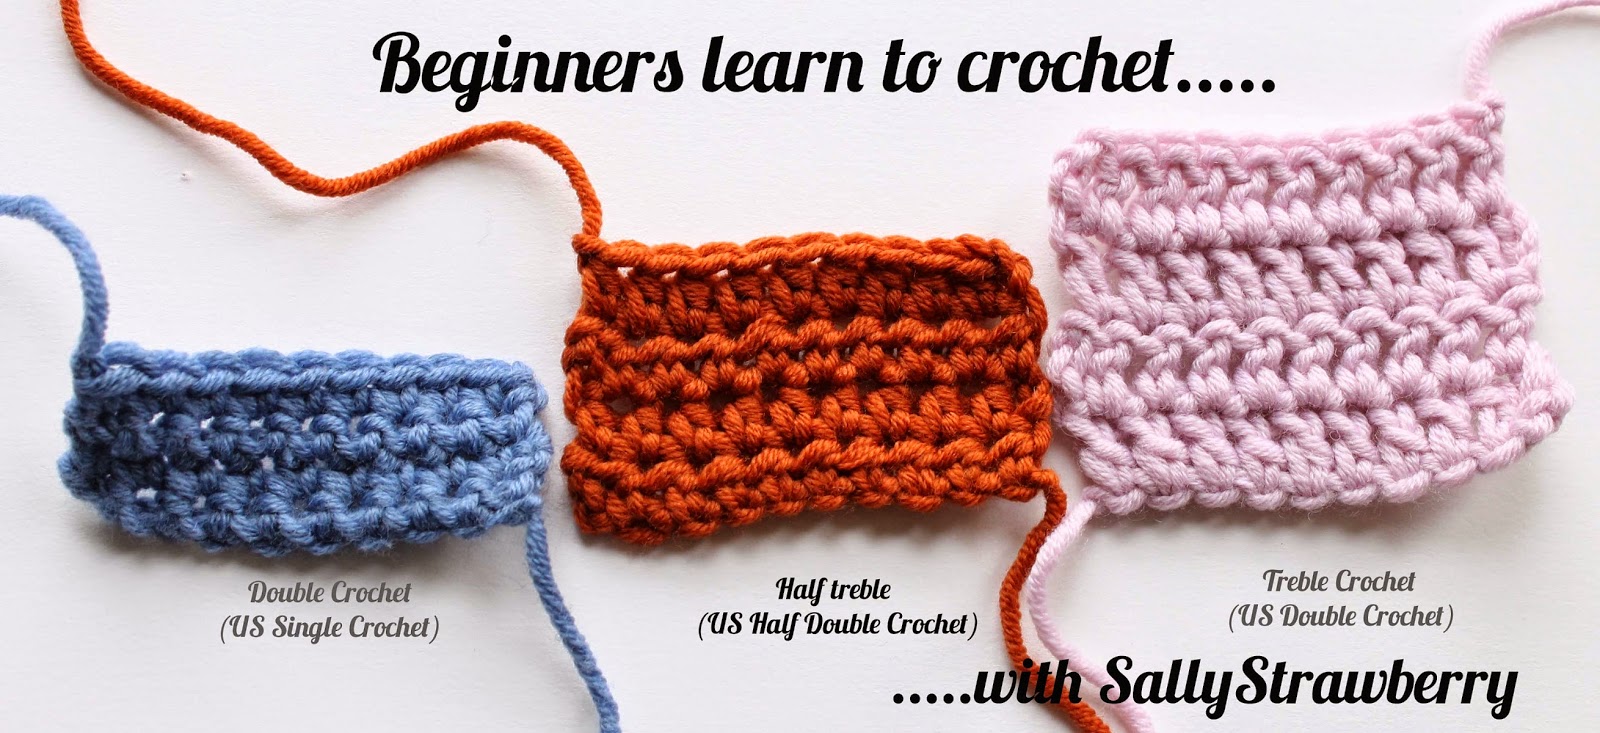 SallyStrawberry: Beginners learn to crochet: Half-treble crochet